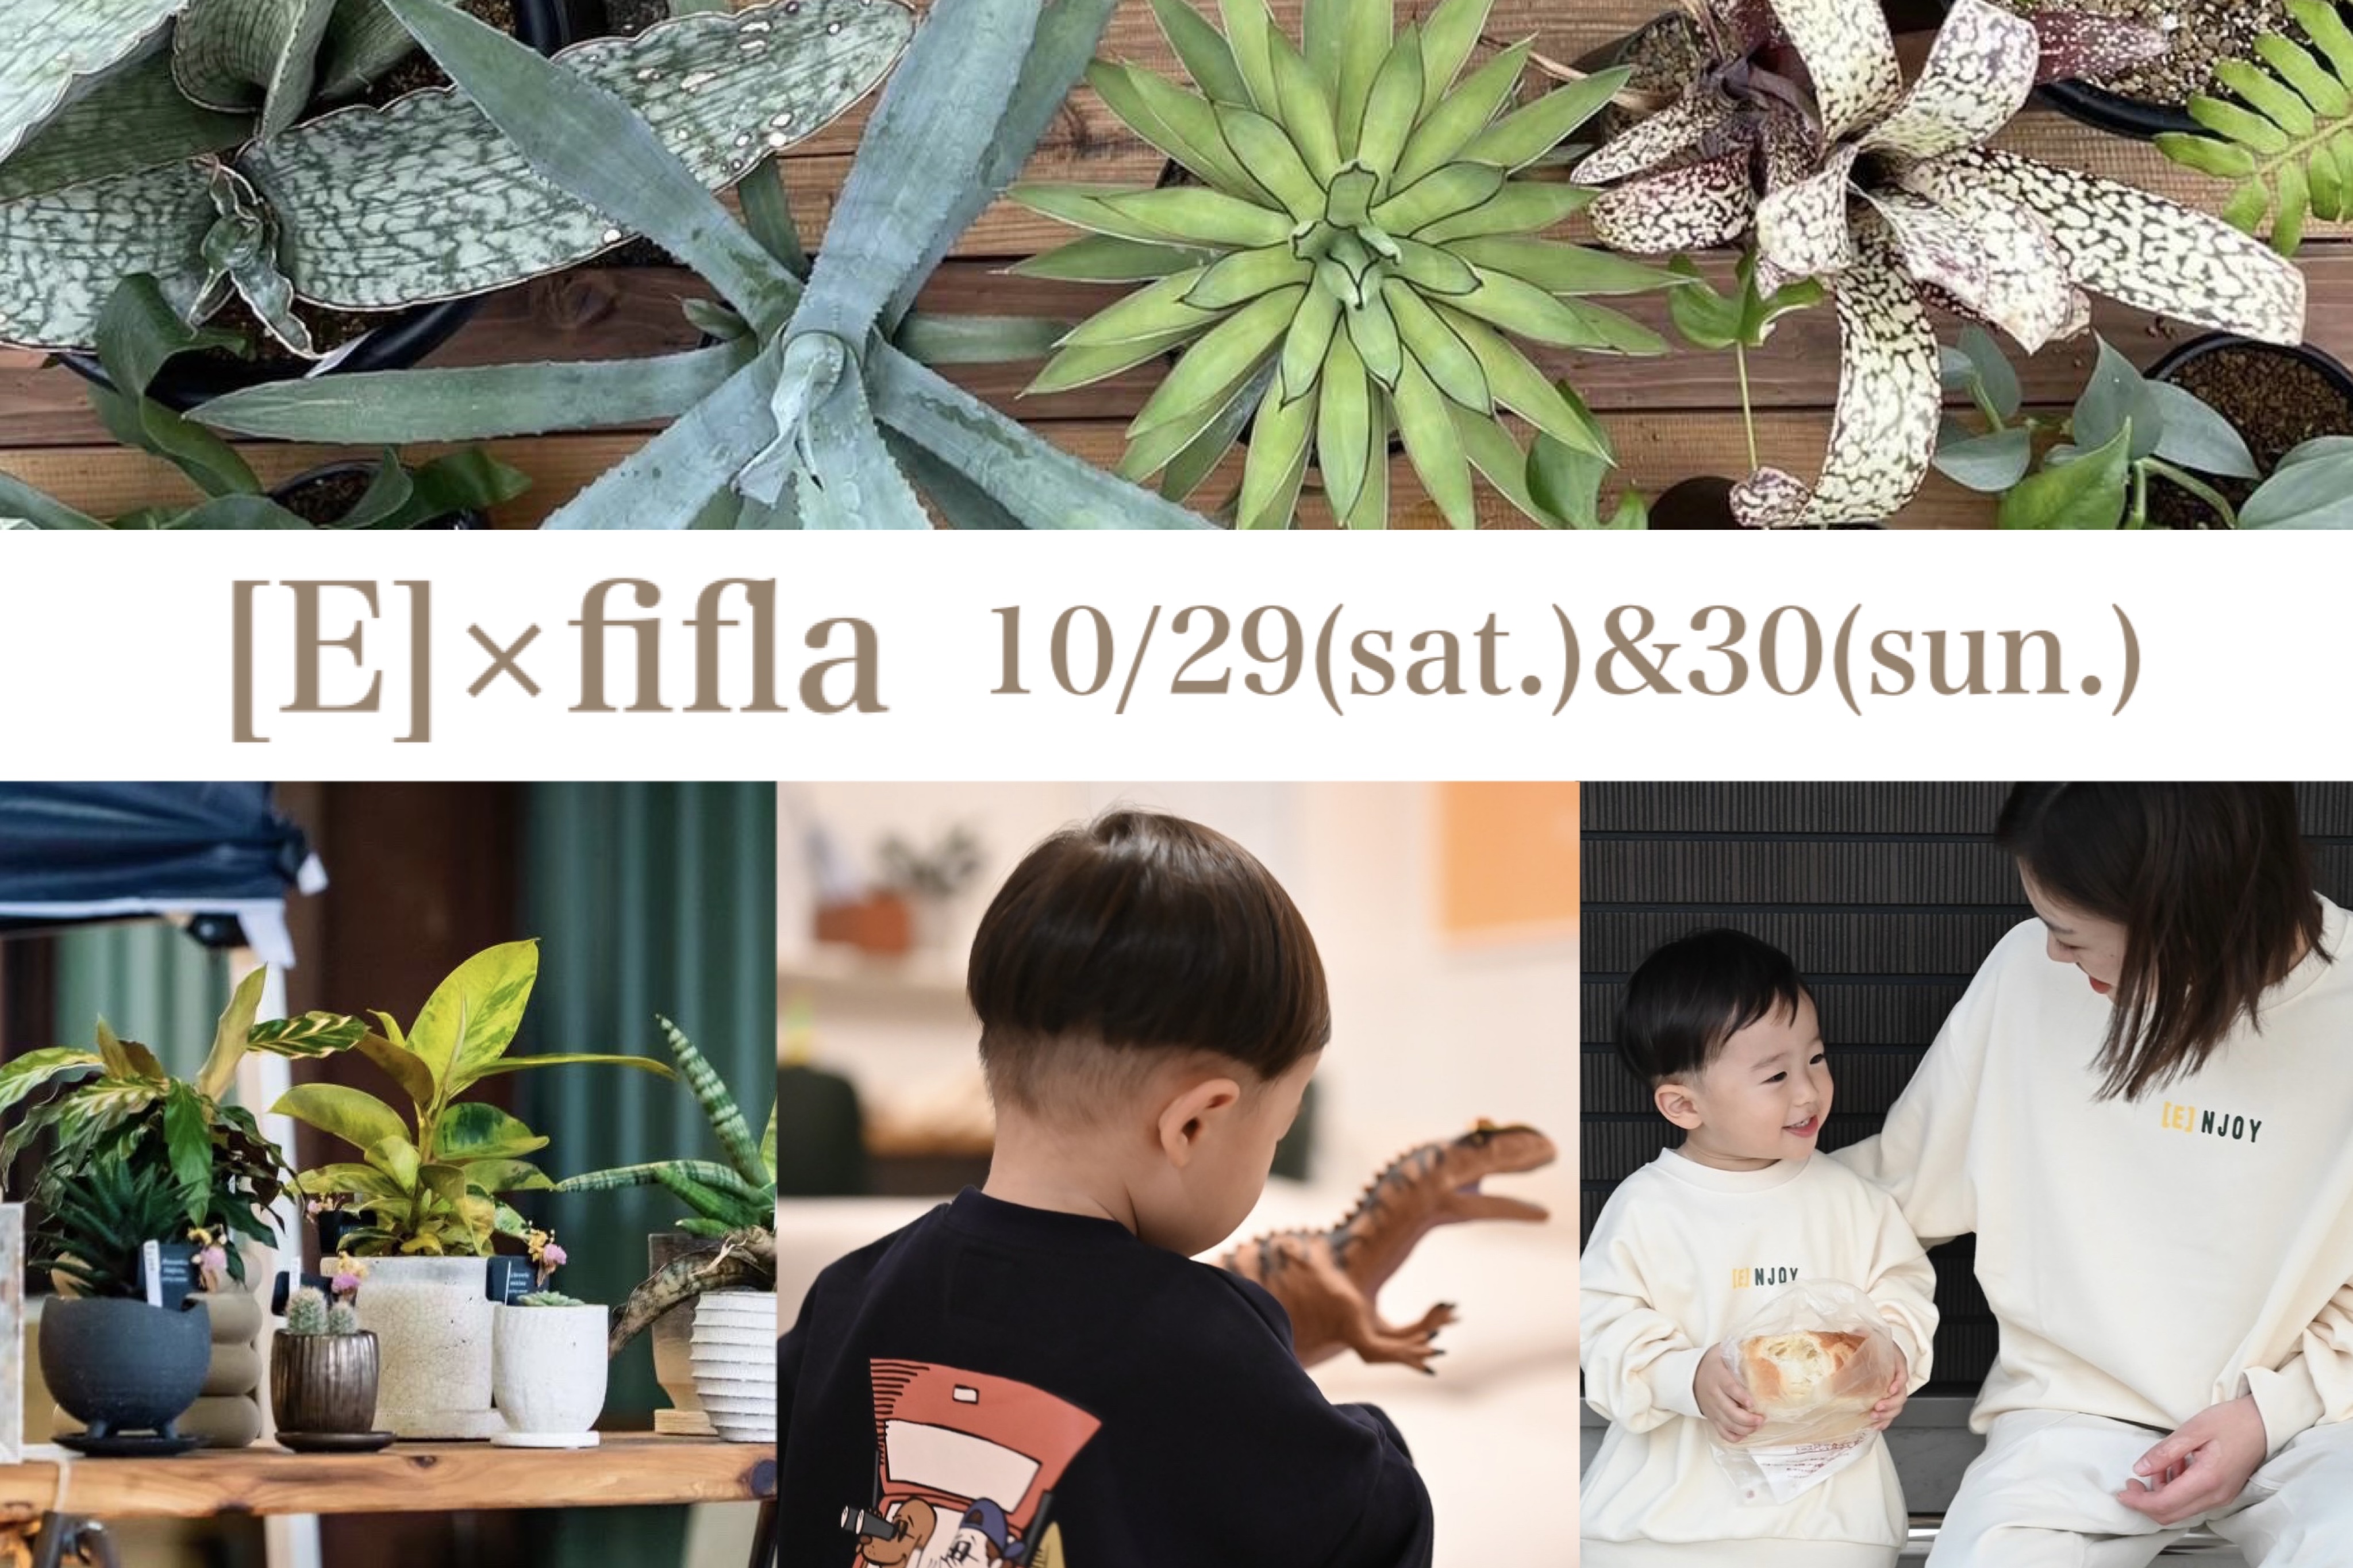 10/29(sat.)&30(sun.) [E]×fifla popup開催のお知らせ